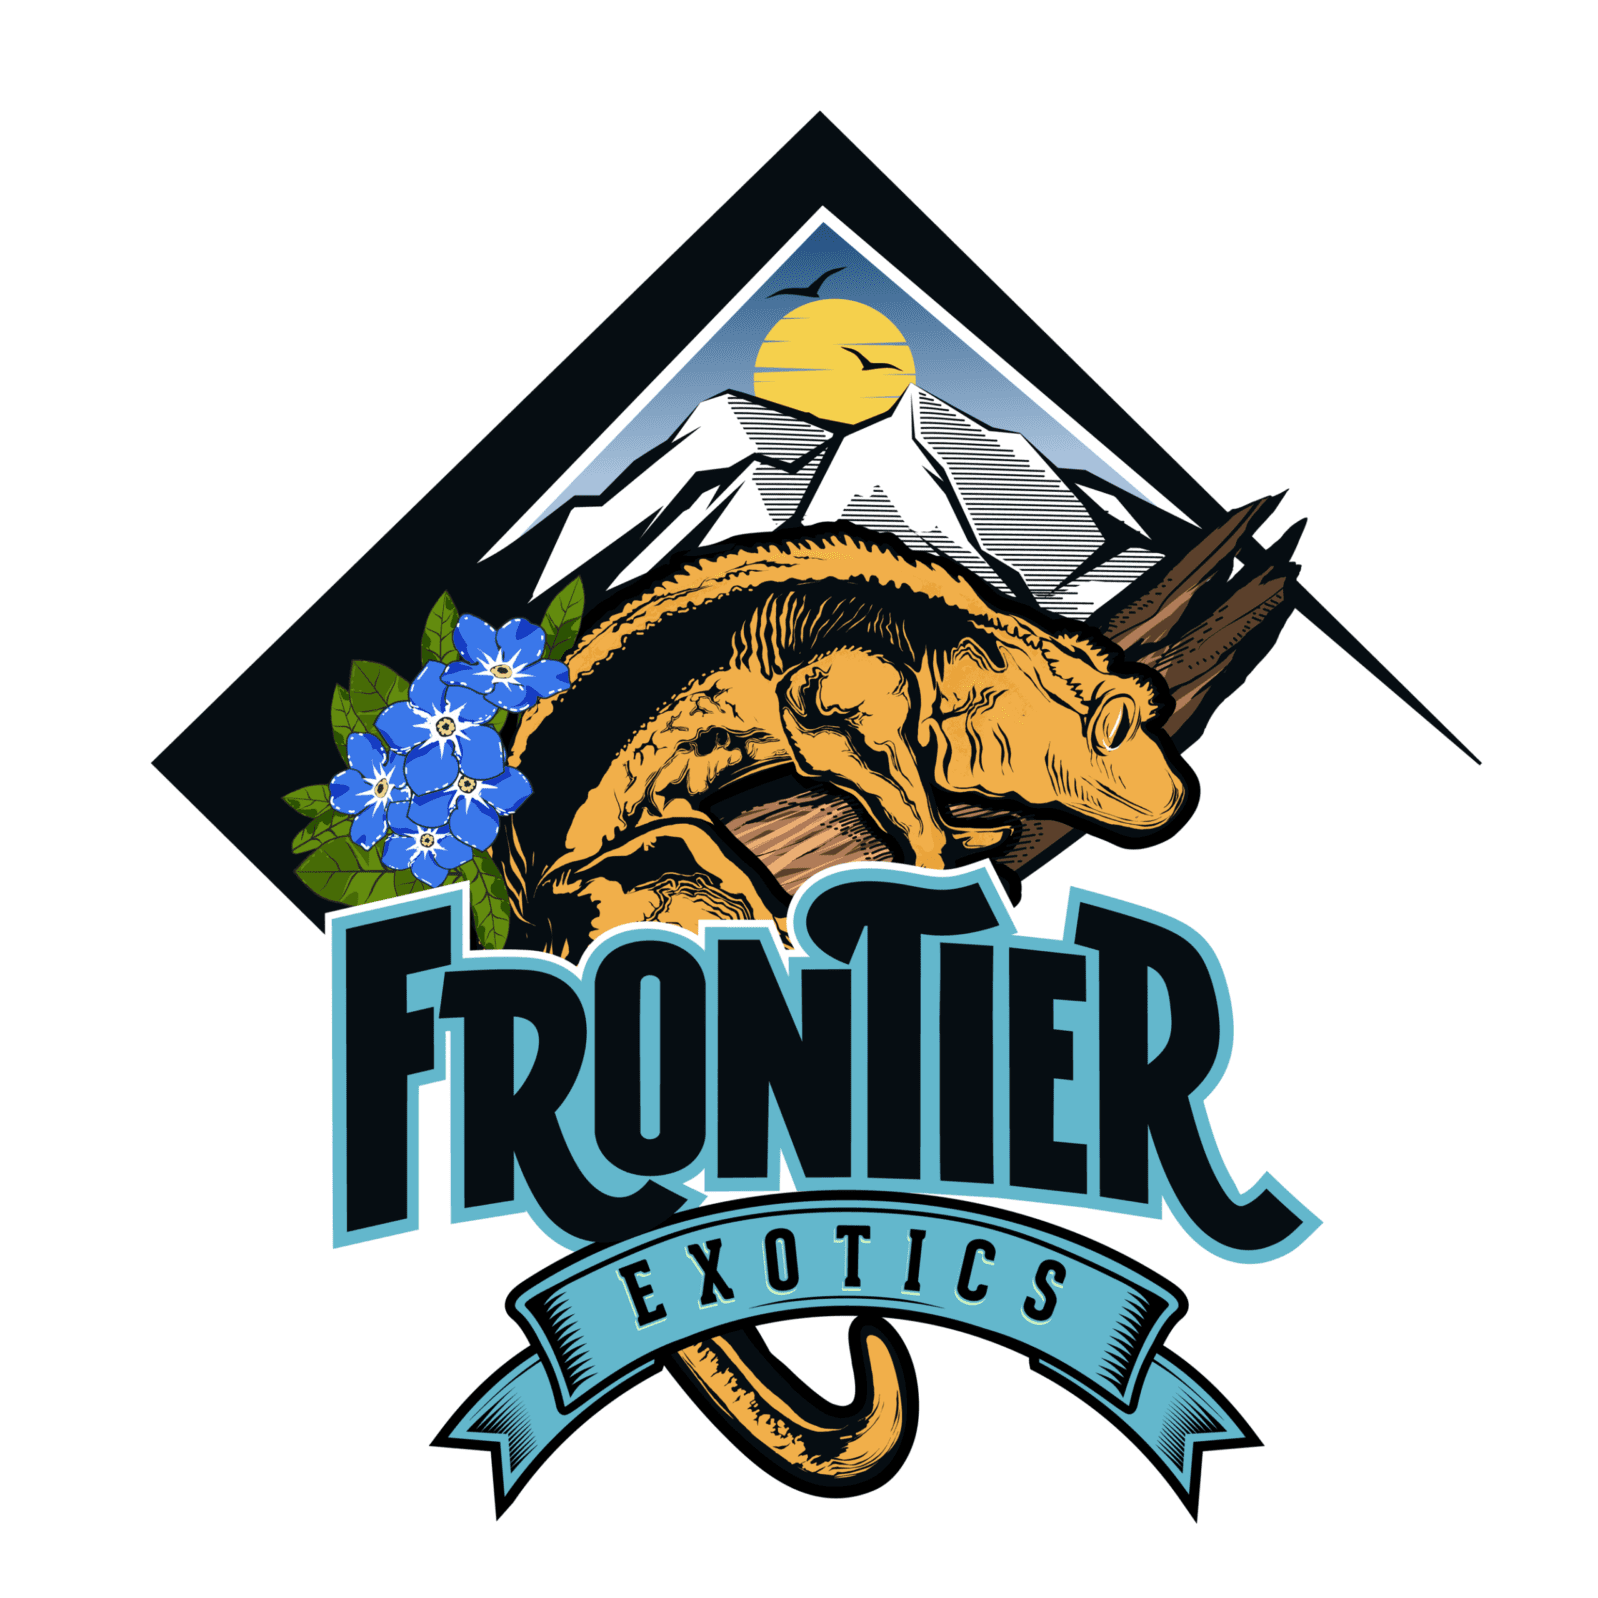 Frontier Exotics